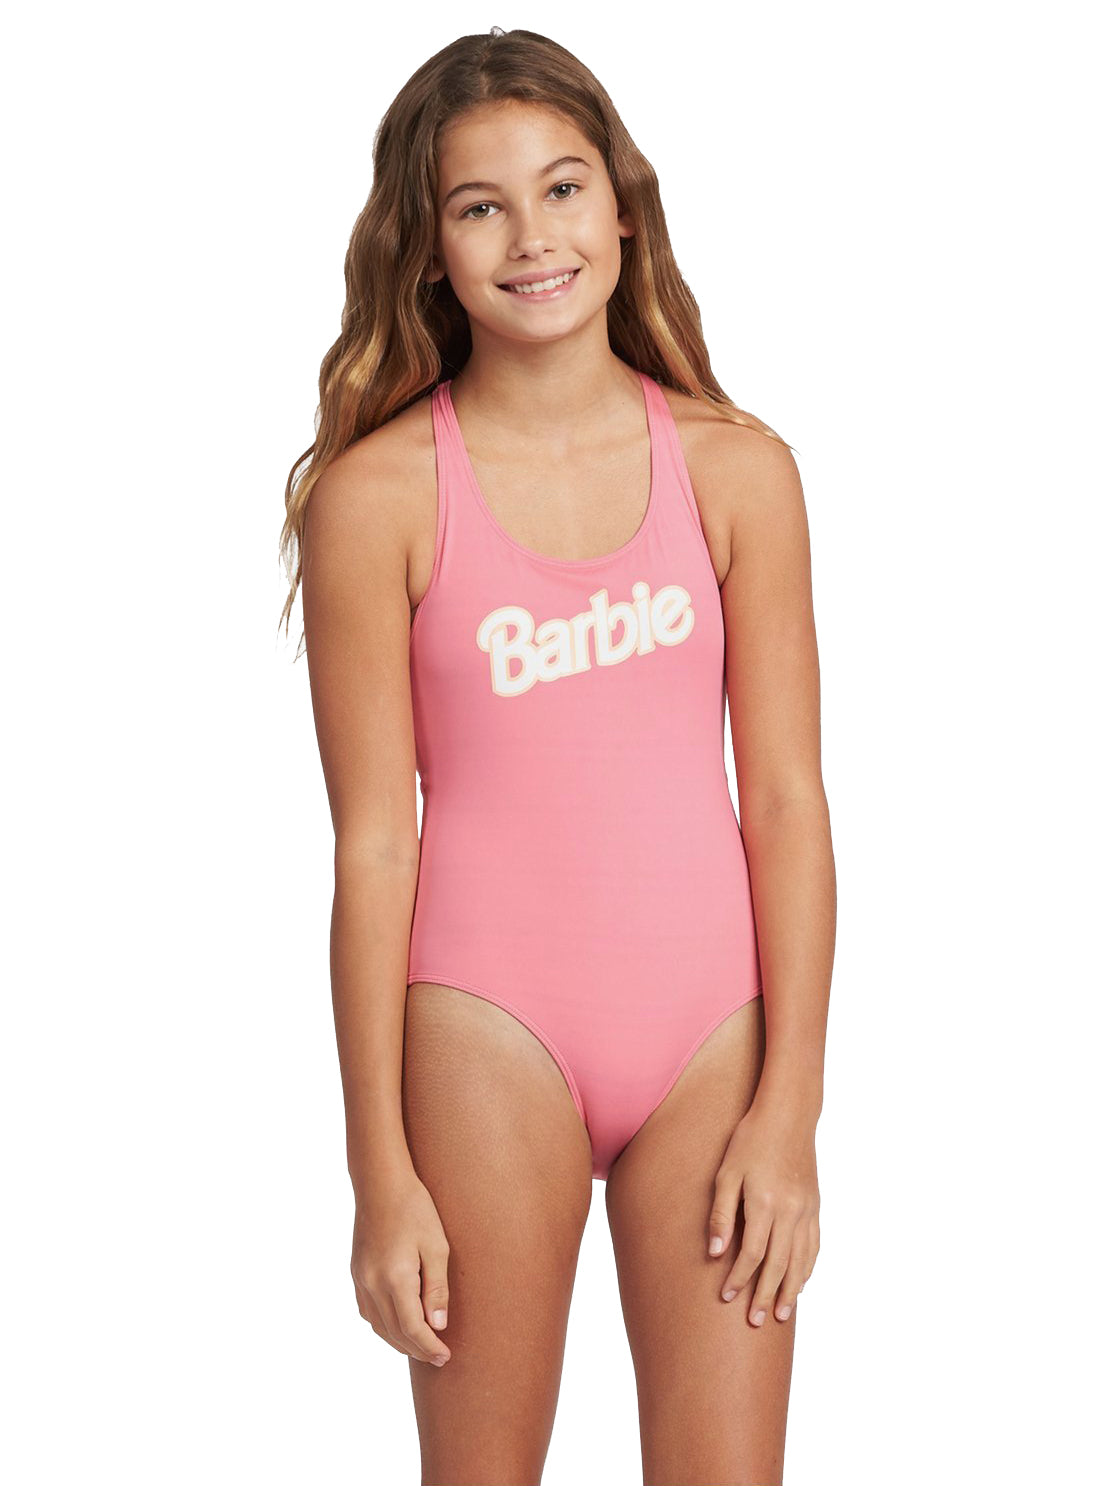 Roxy Girl Barbie One Piece Swimsuit